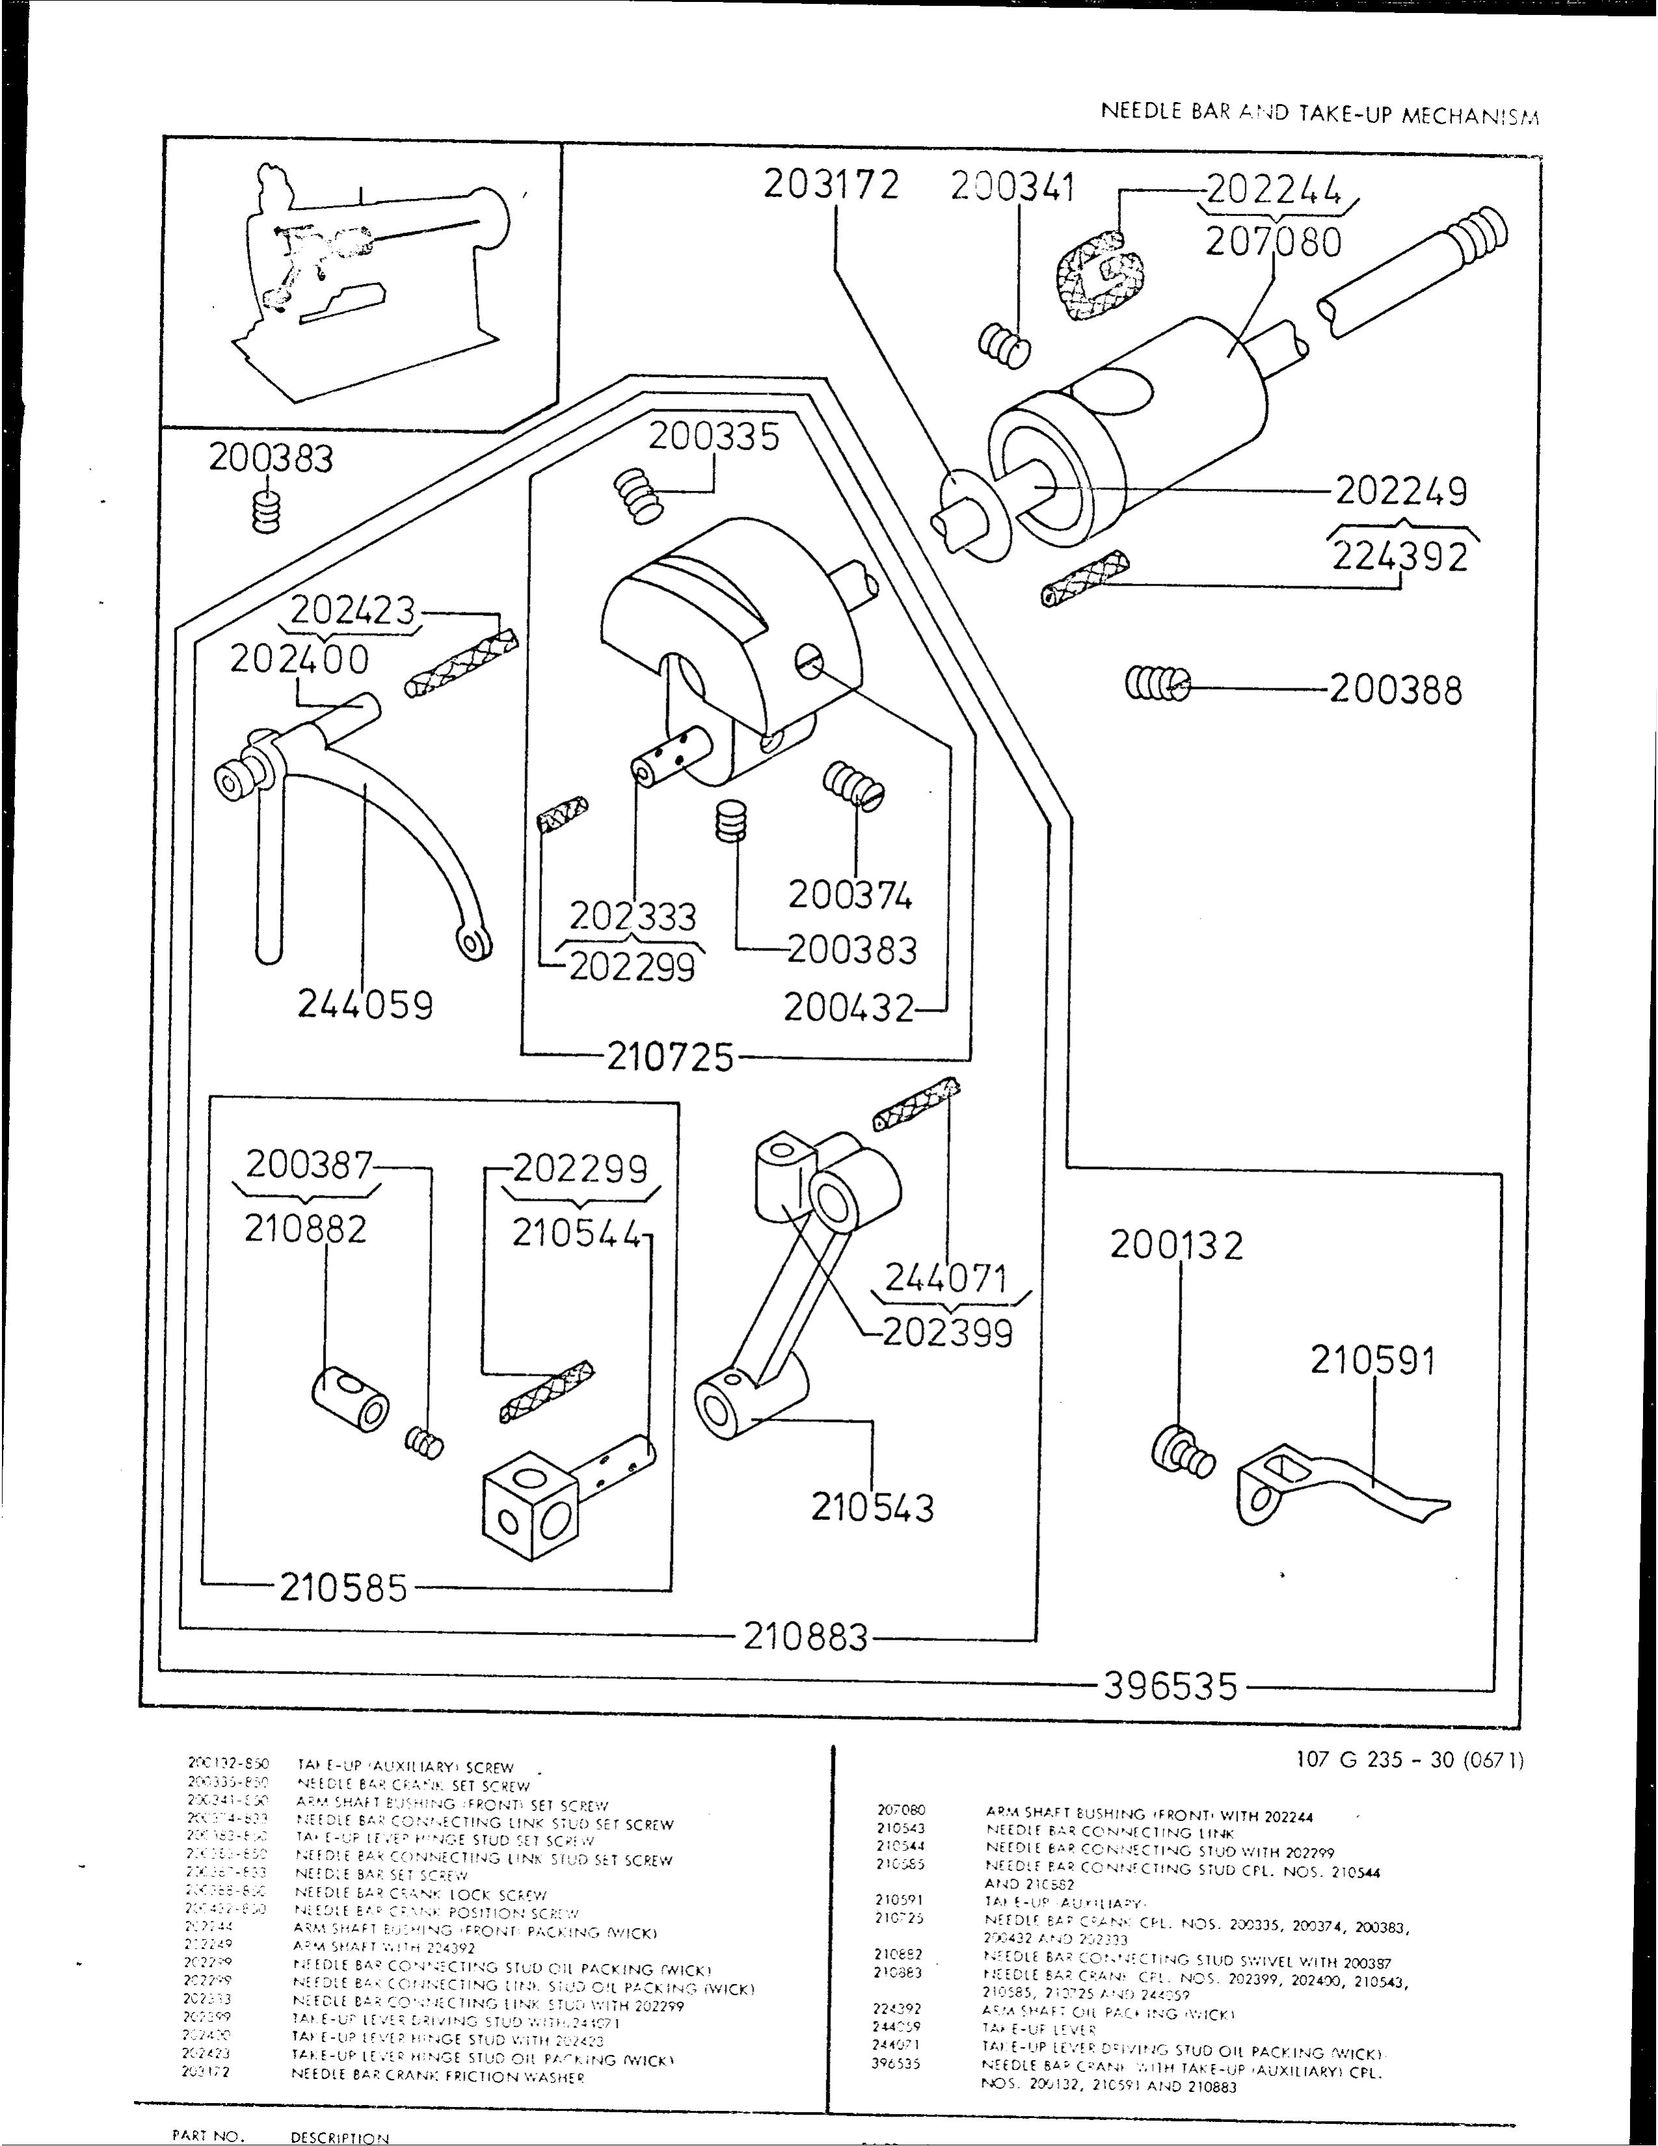 Singer 107G235 Sewing Machine User Manual (Page 4)